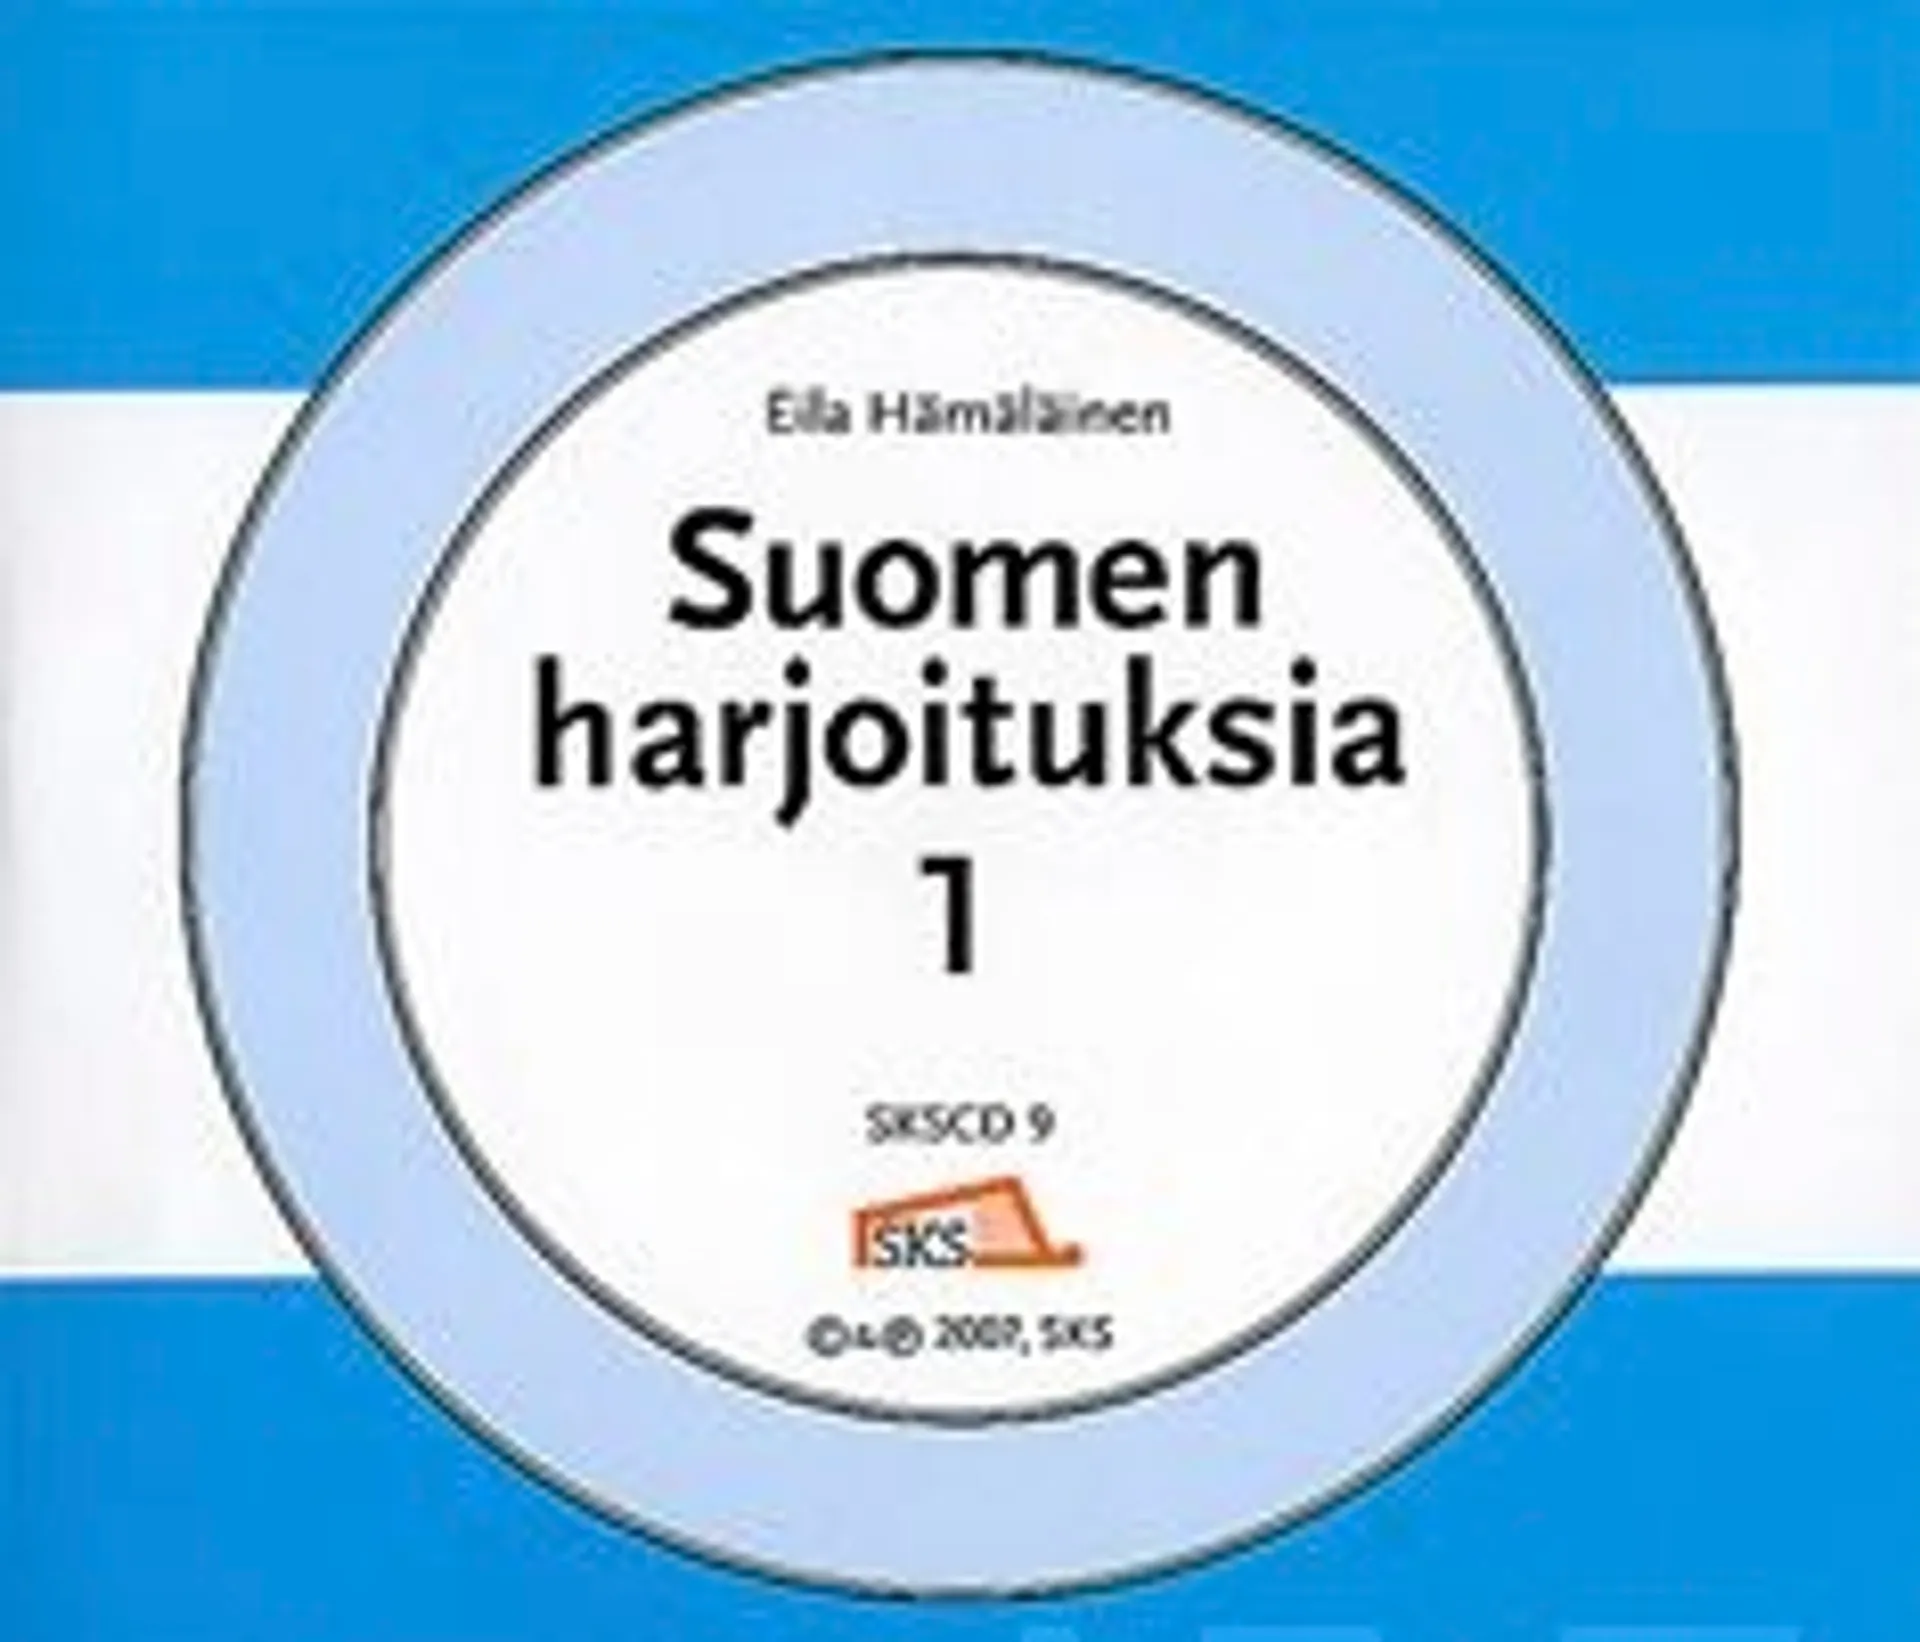 Hämäläinen, Suomen harjoituksia 1 (5 cd)